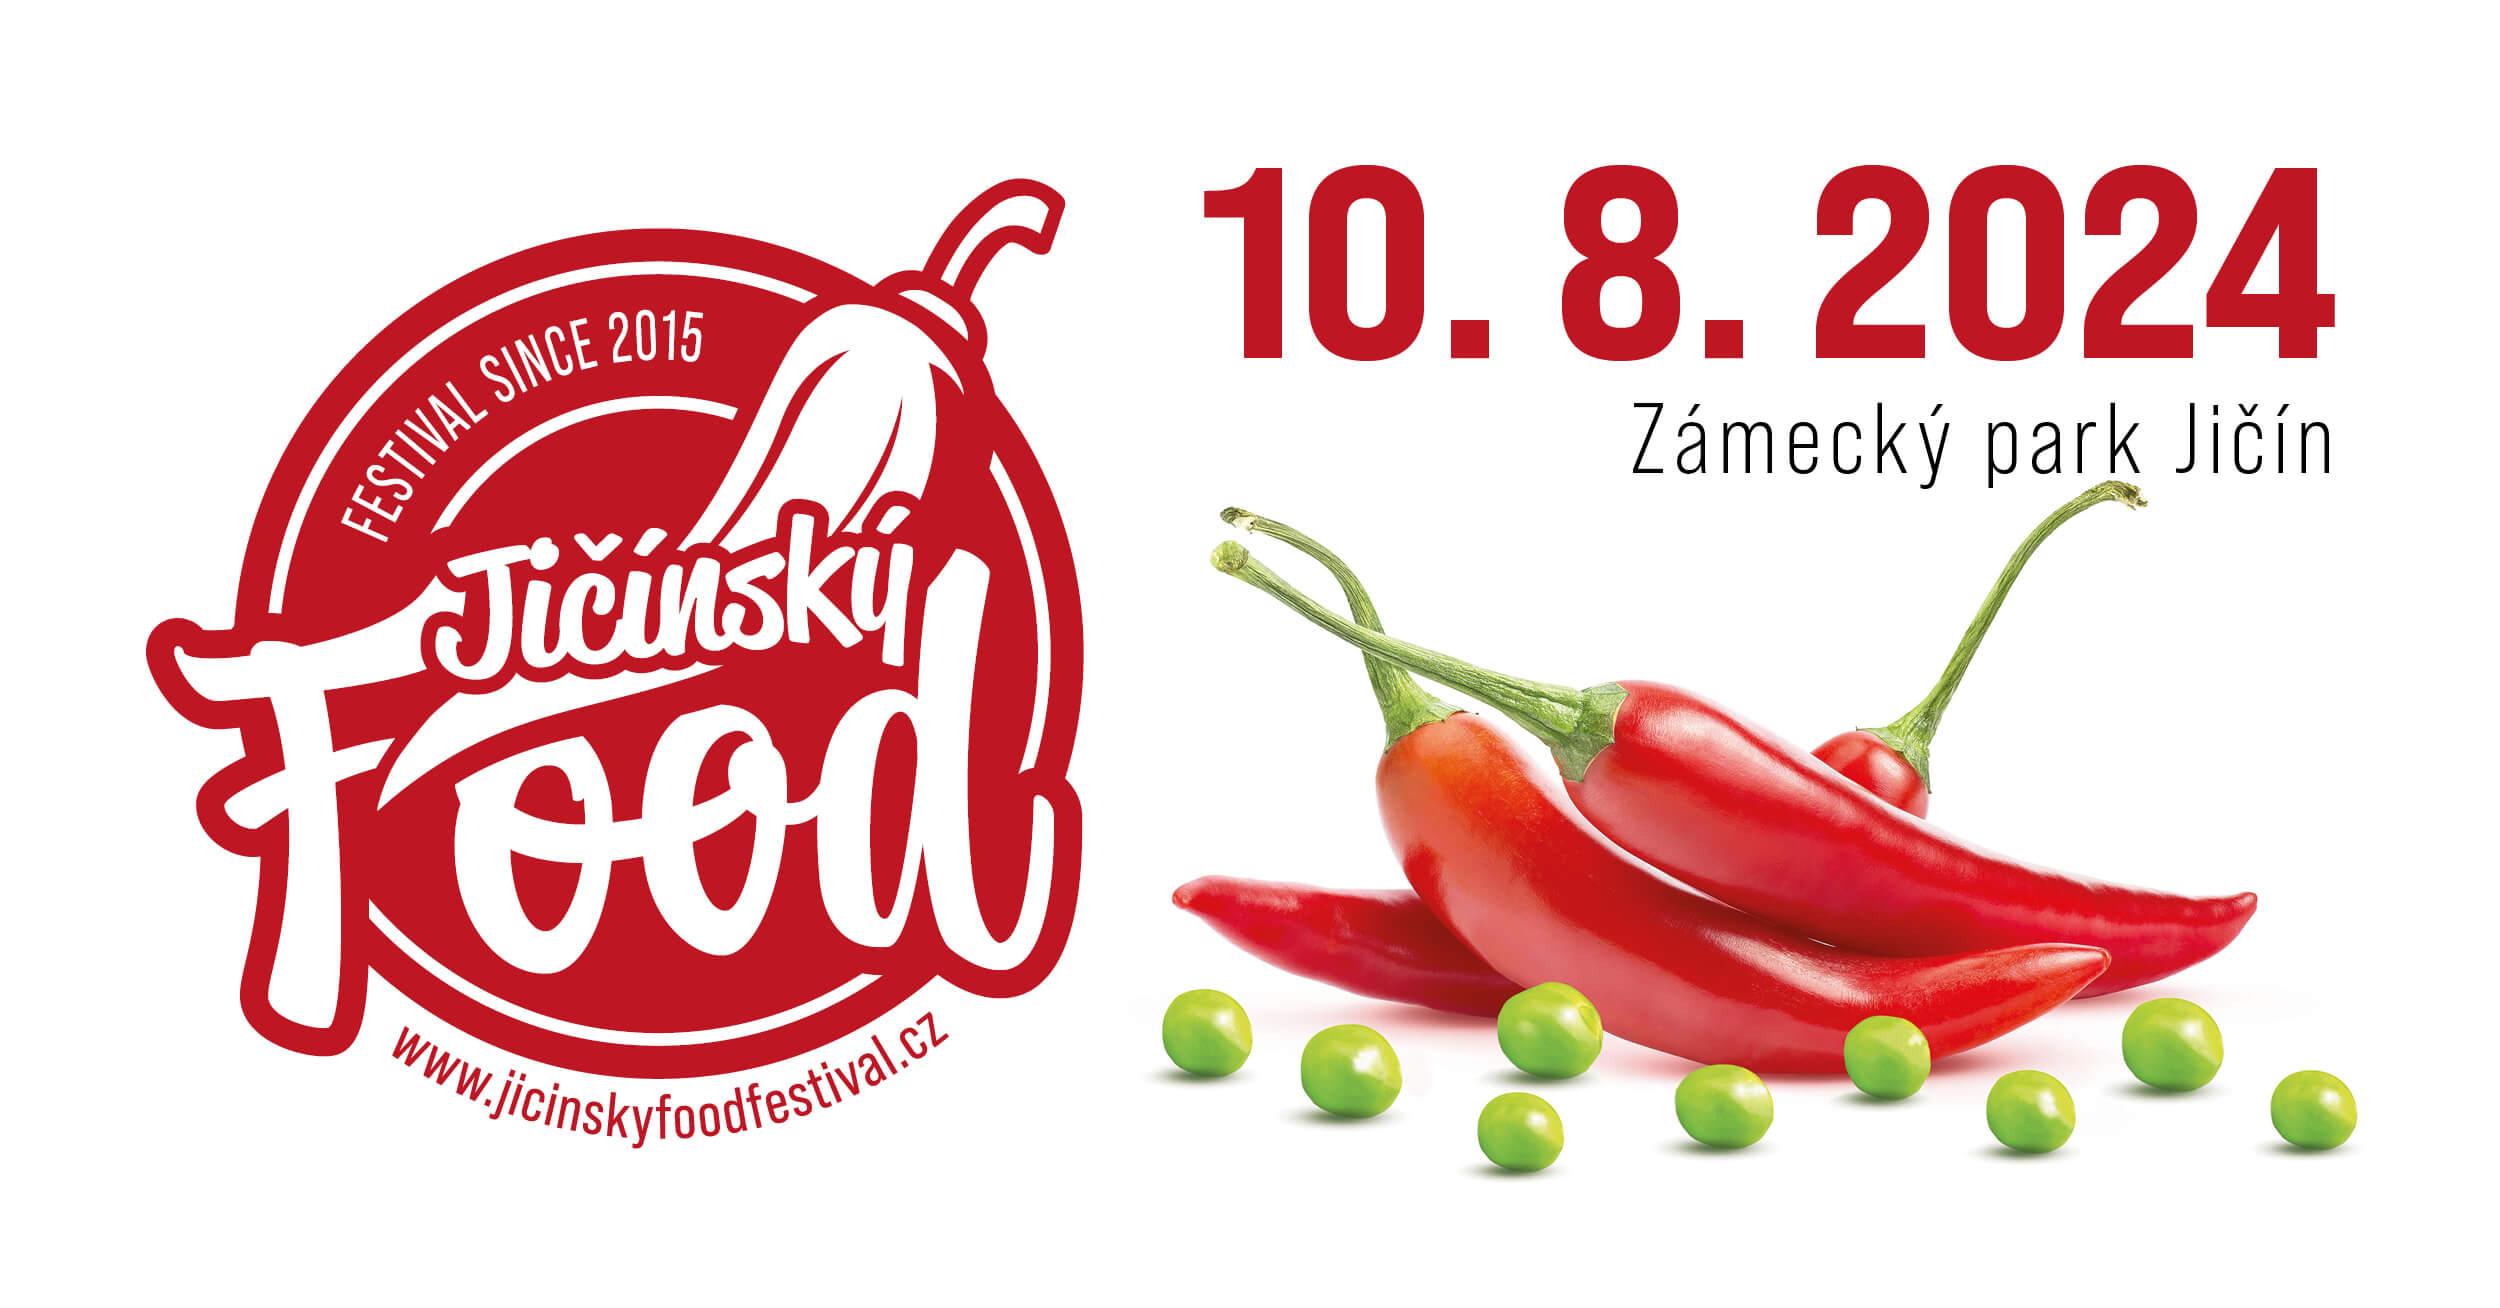 Jičínský food festival 10. 8. 2024